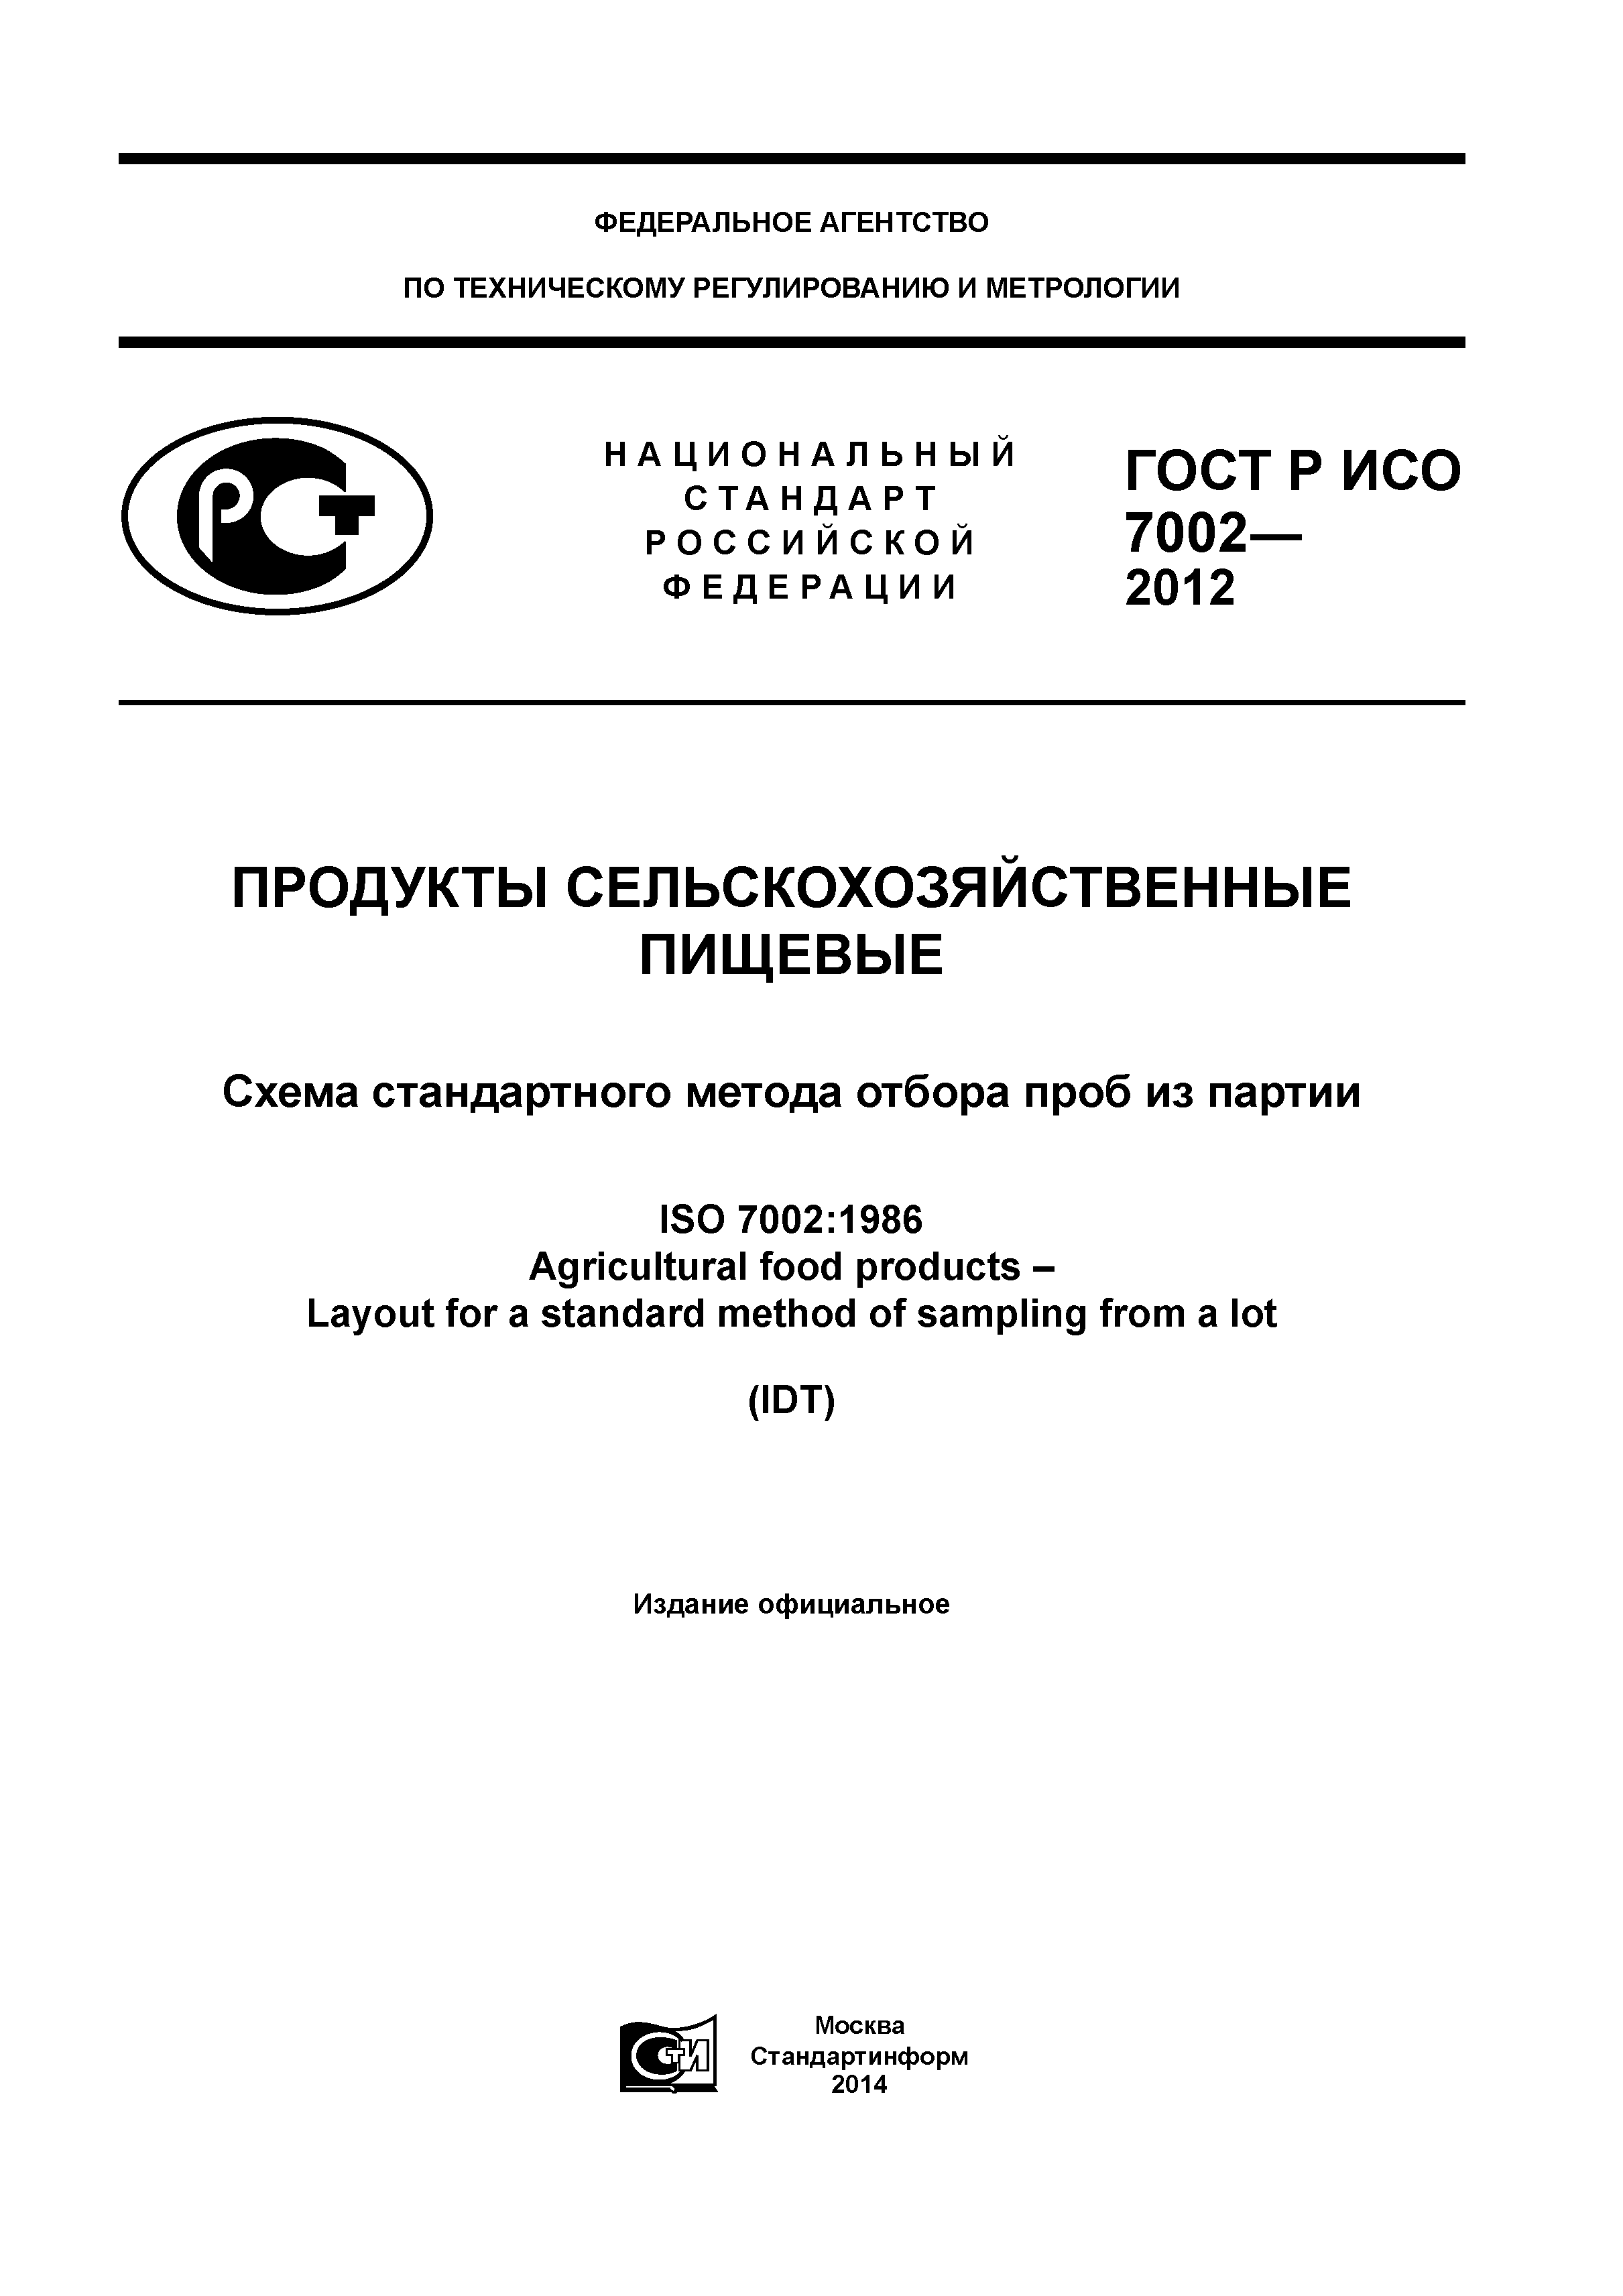 ГОСТ Р ИСО 7002-2012